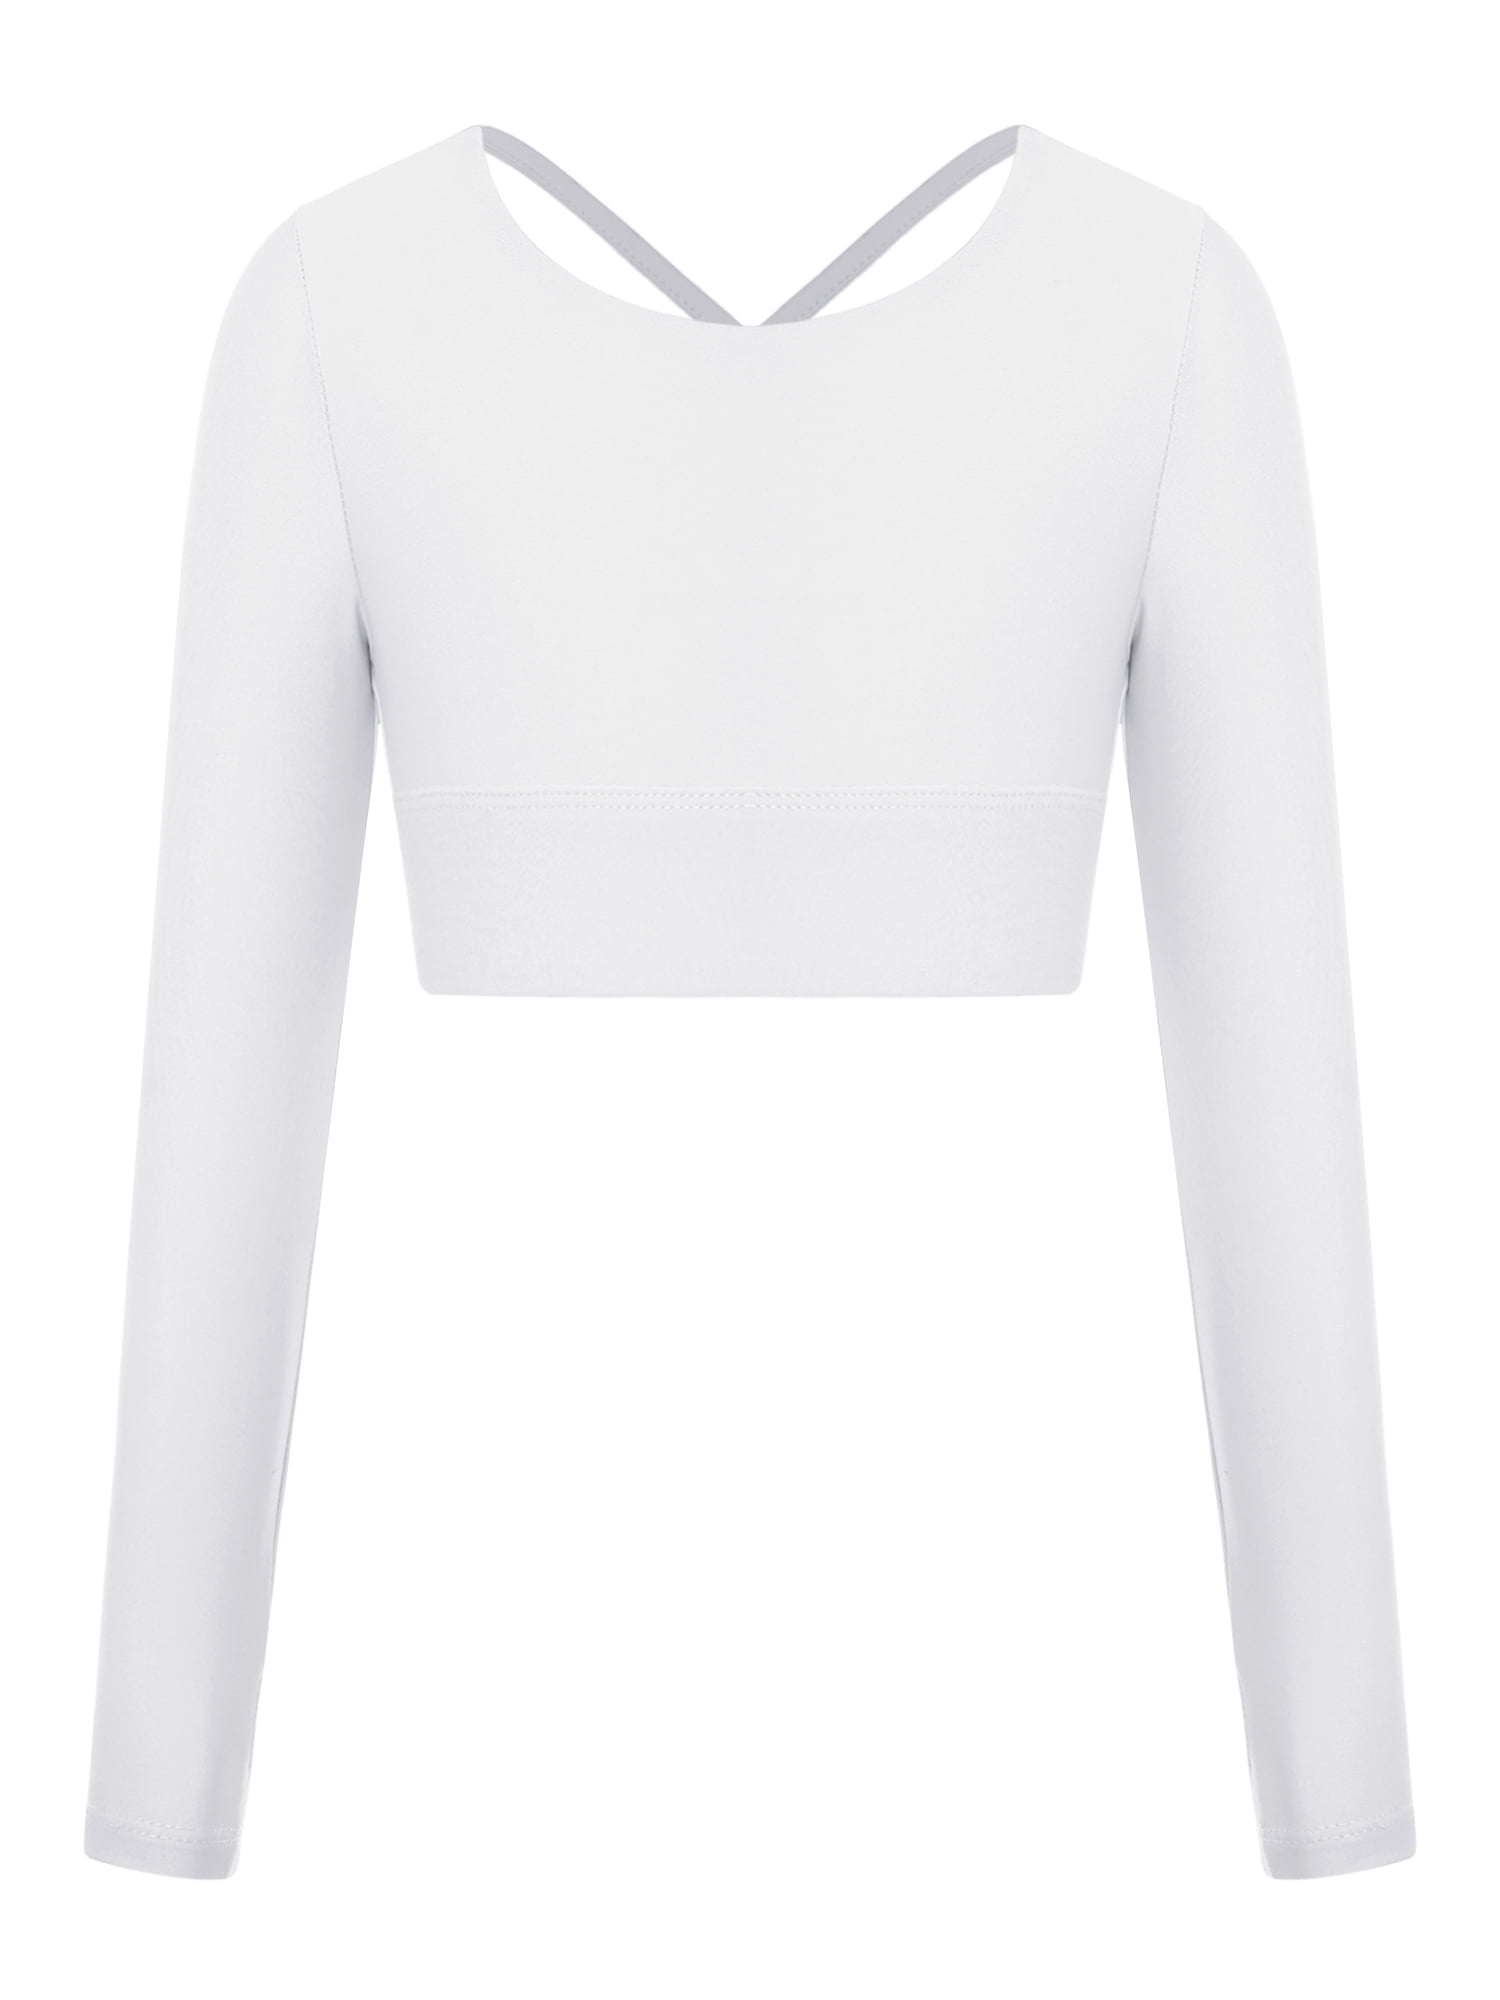 White Monochrome Crop Top. Activewear